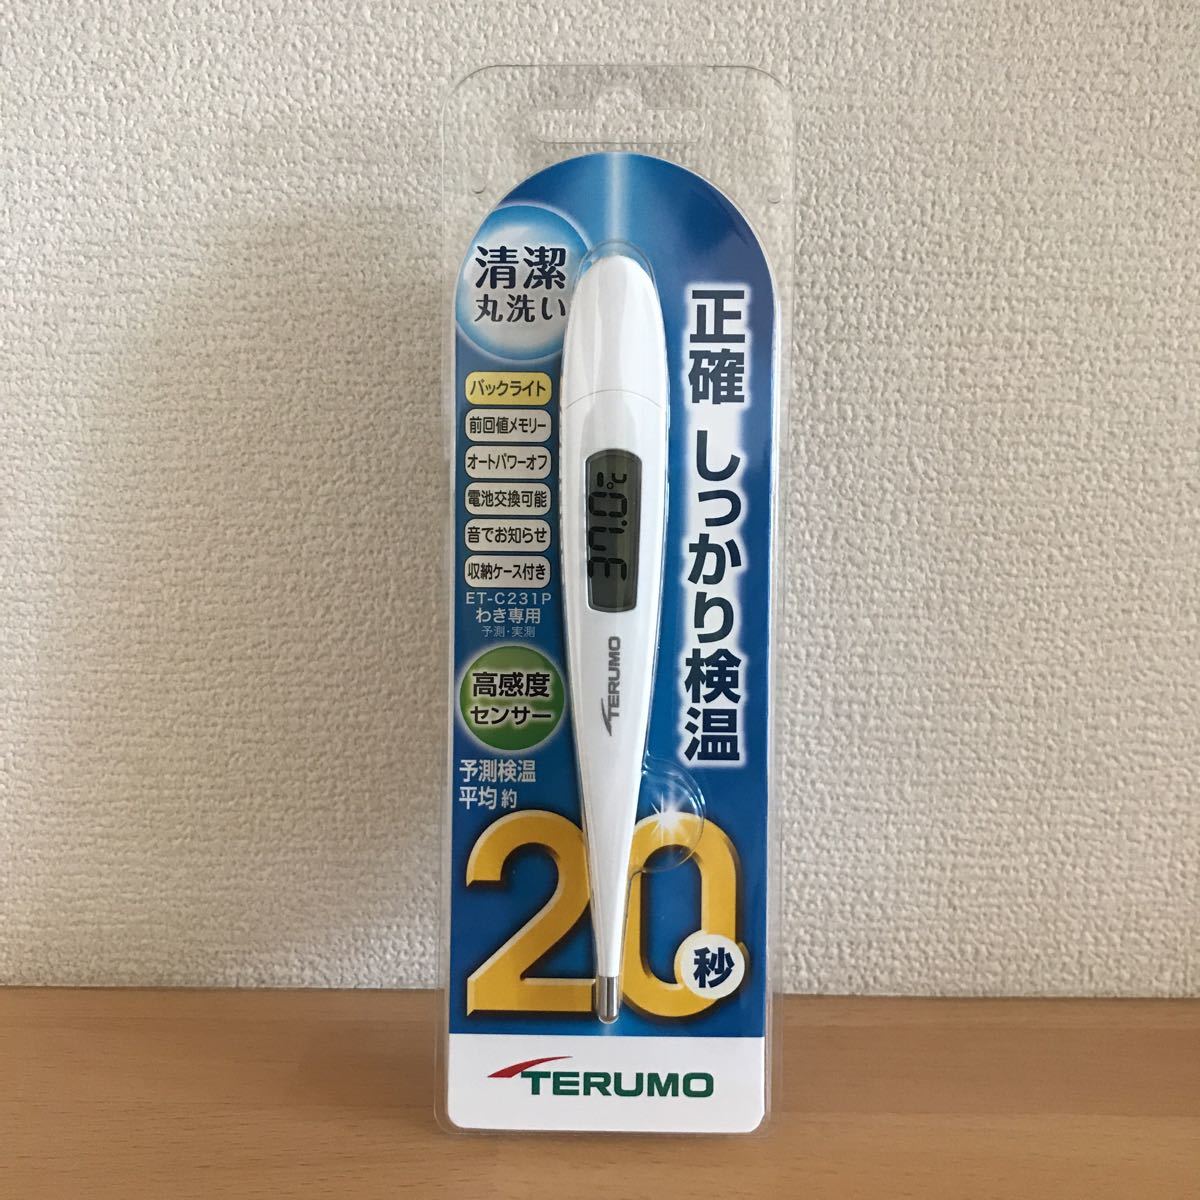 【新品未使用】TERUMO テルモ電子体温計 ET-C231P 予測検温20秒 水洗いOK《送料込み》